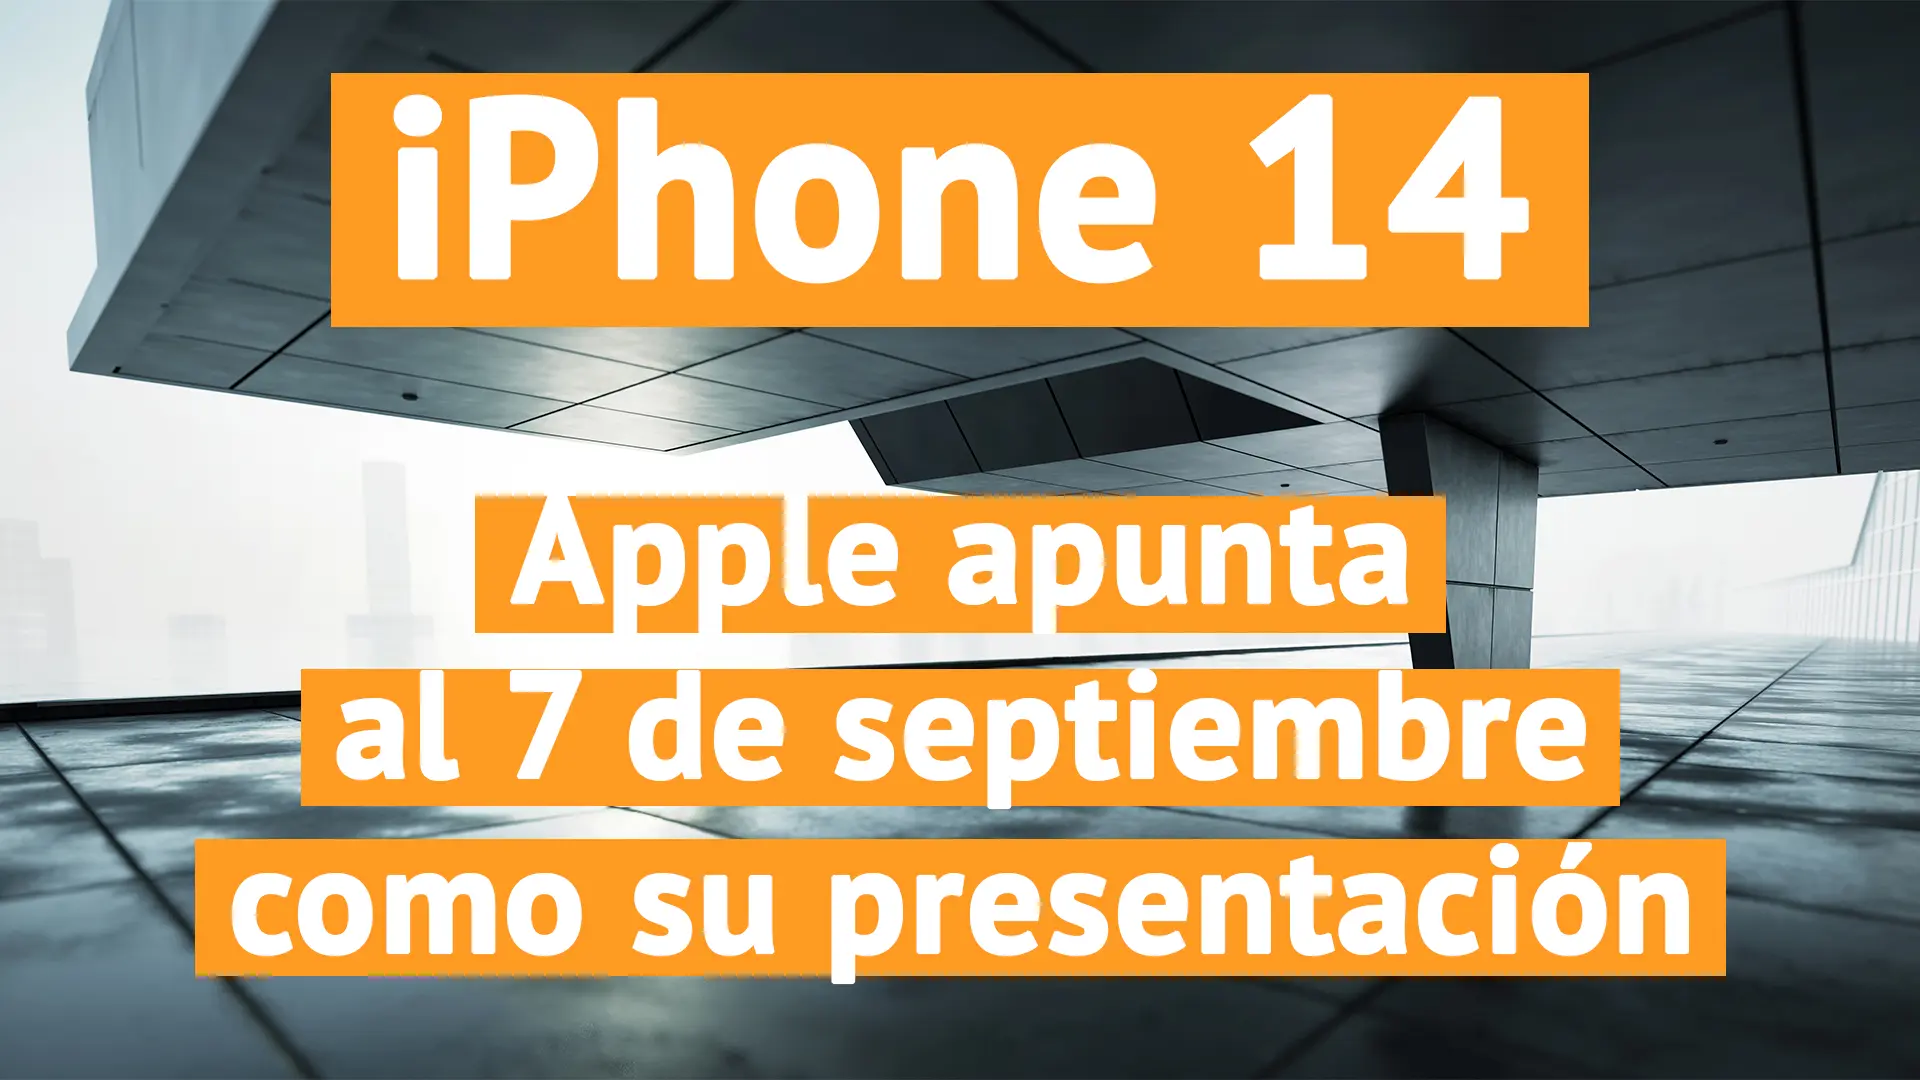 Apple apunta al 7 de septiembre como la presentación del nuevo iPhone 14